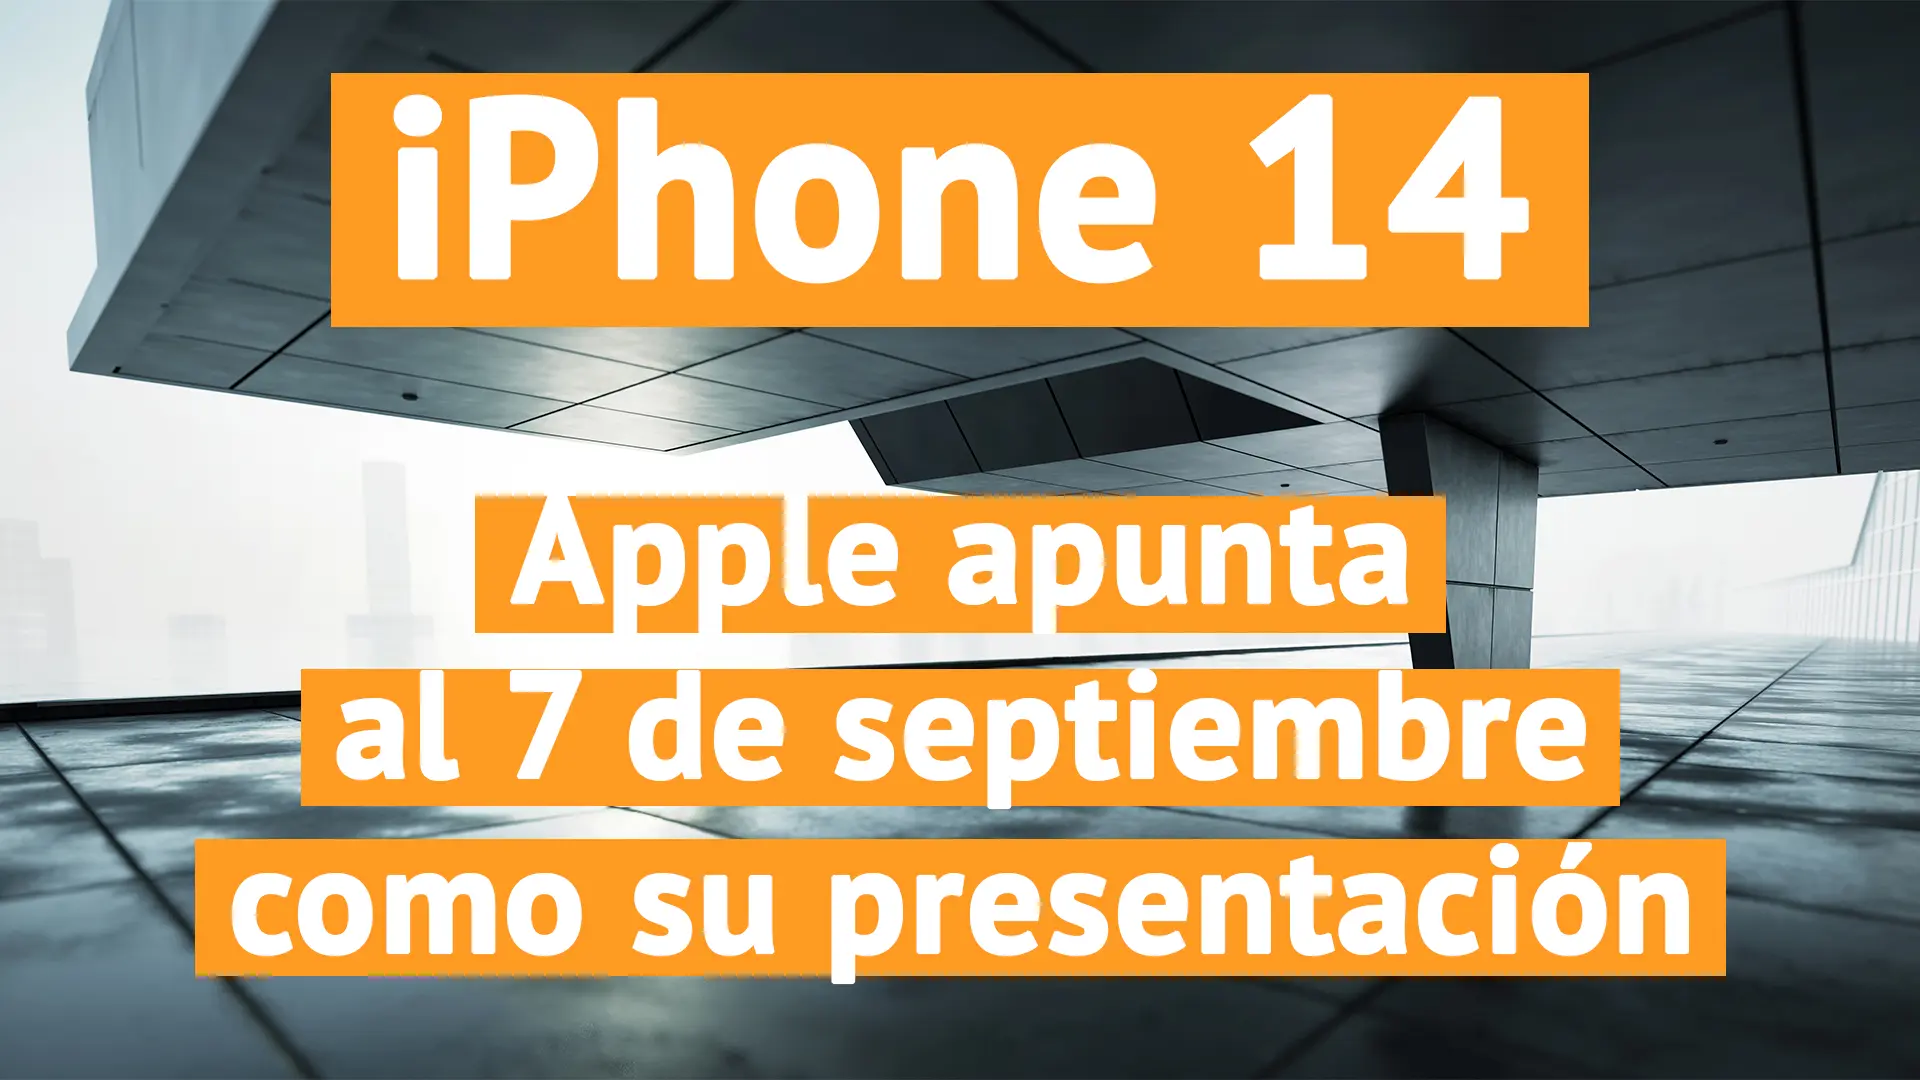 Apple apunta al 7 de septiembre como la presentación del nuevo iPhone 14